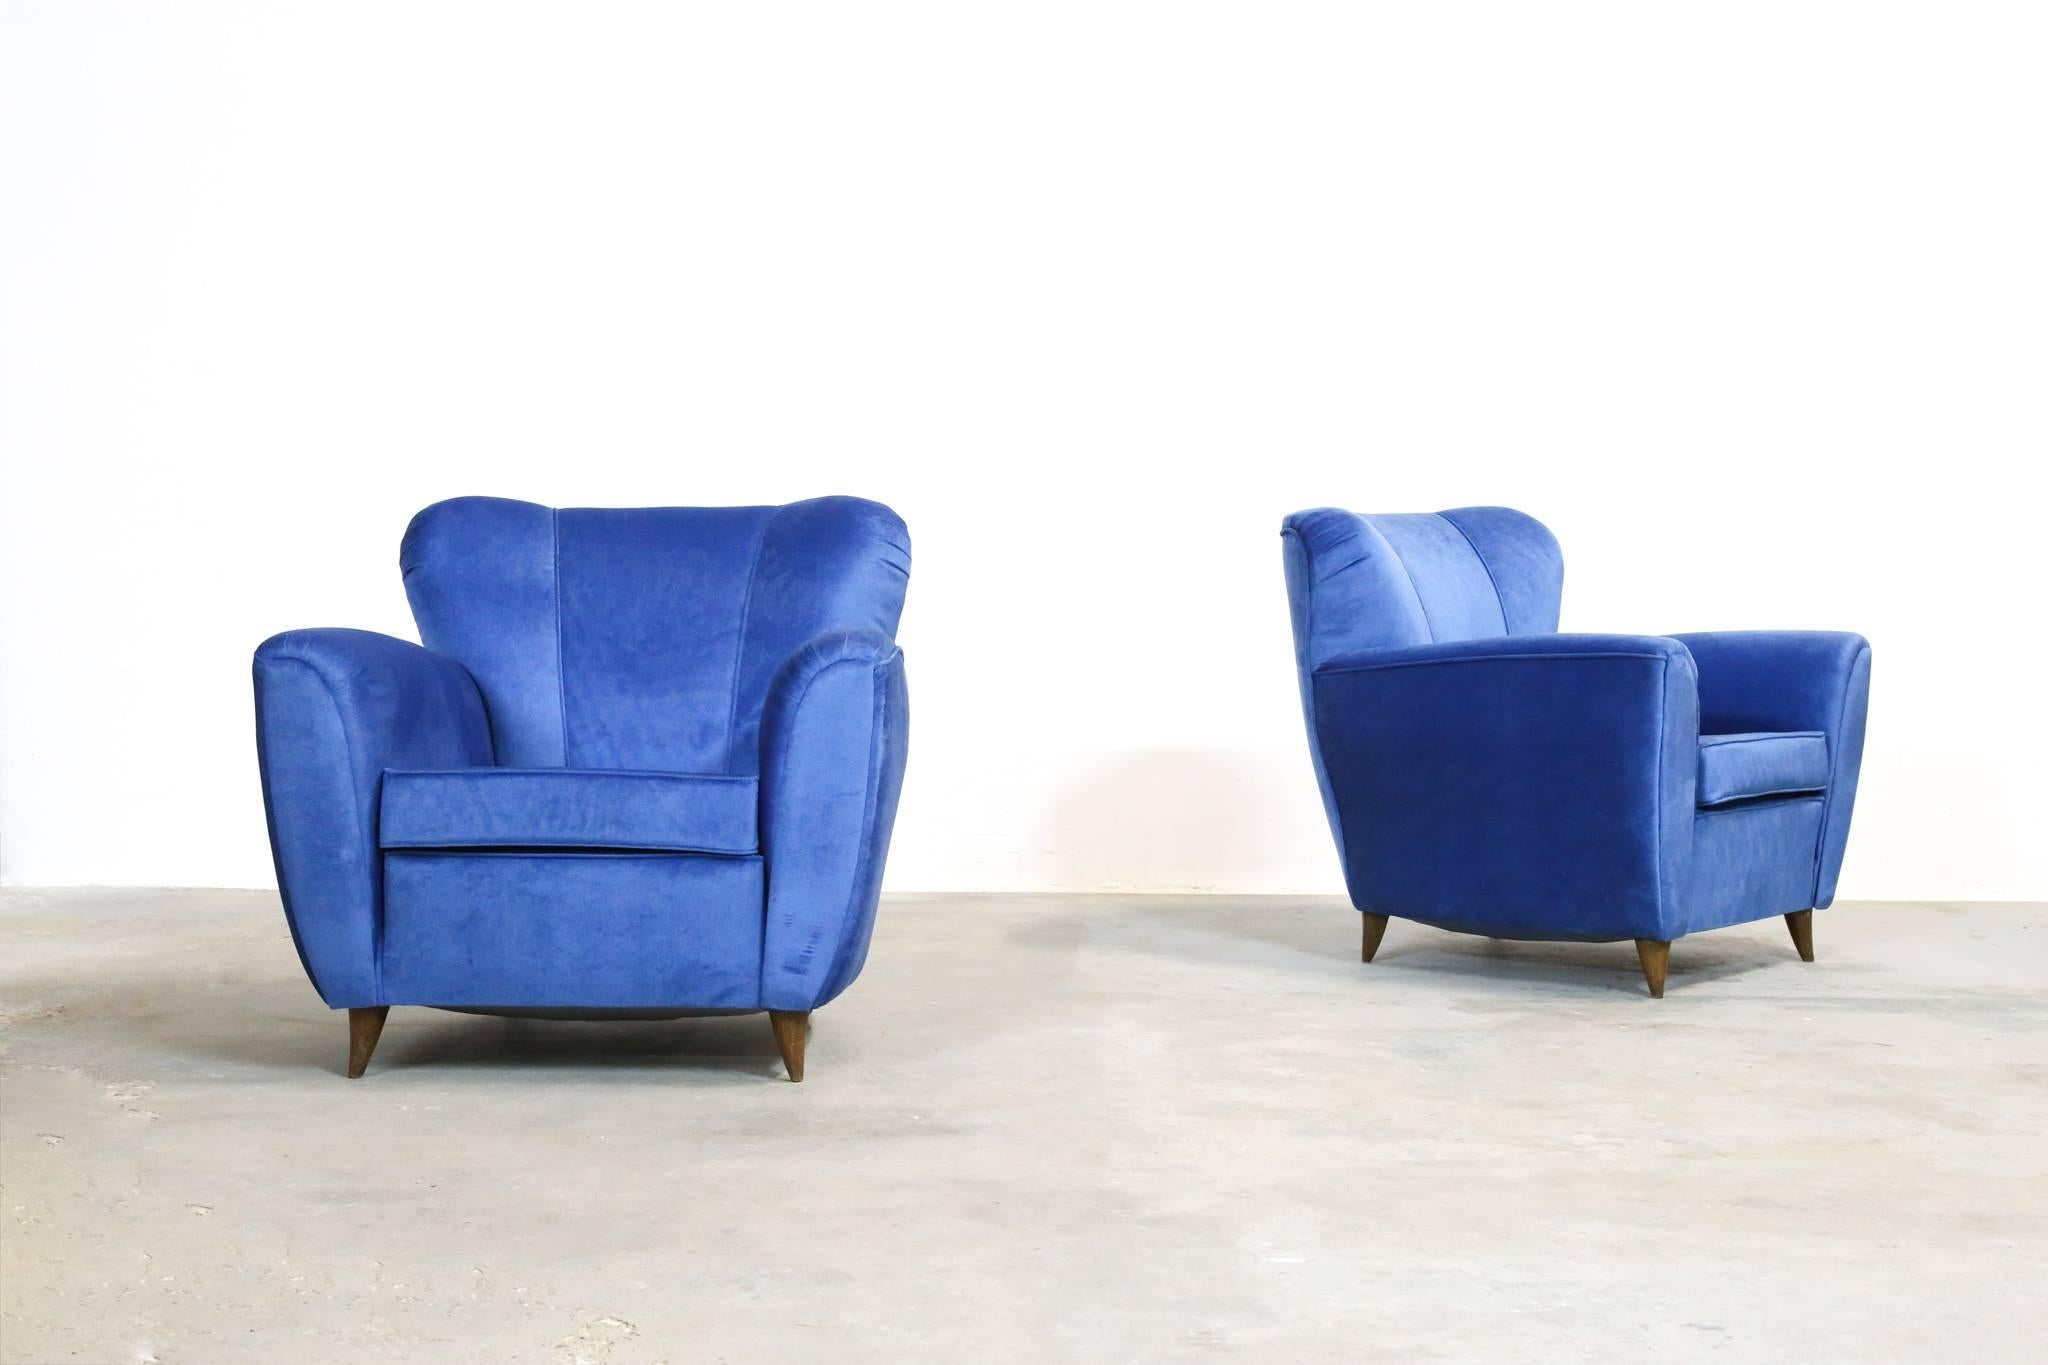 Ein Paar Sessel im Stil von Gio Ponti.
Frisch gepolstert.